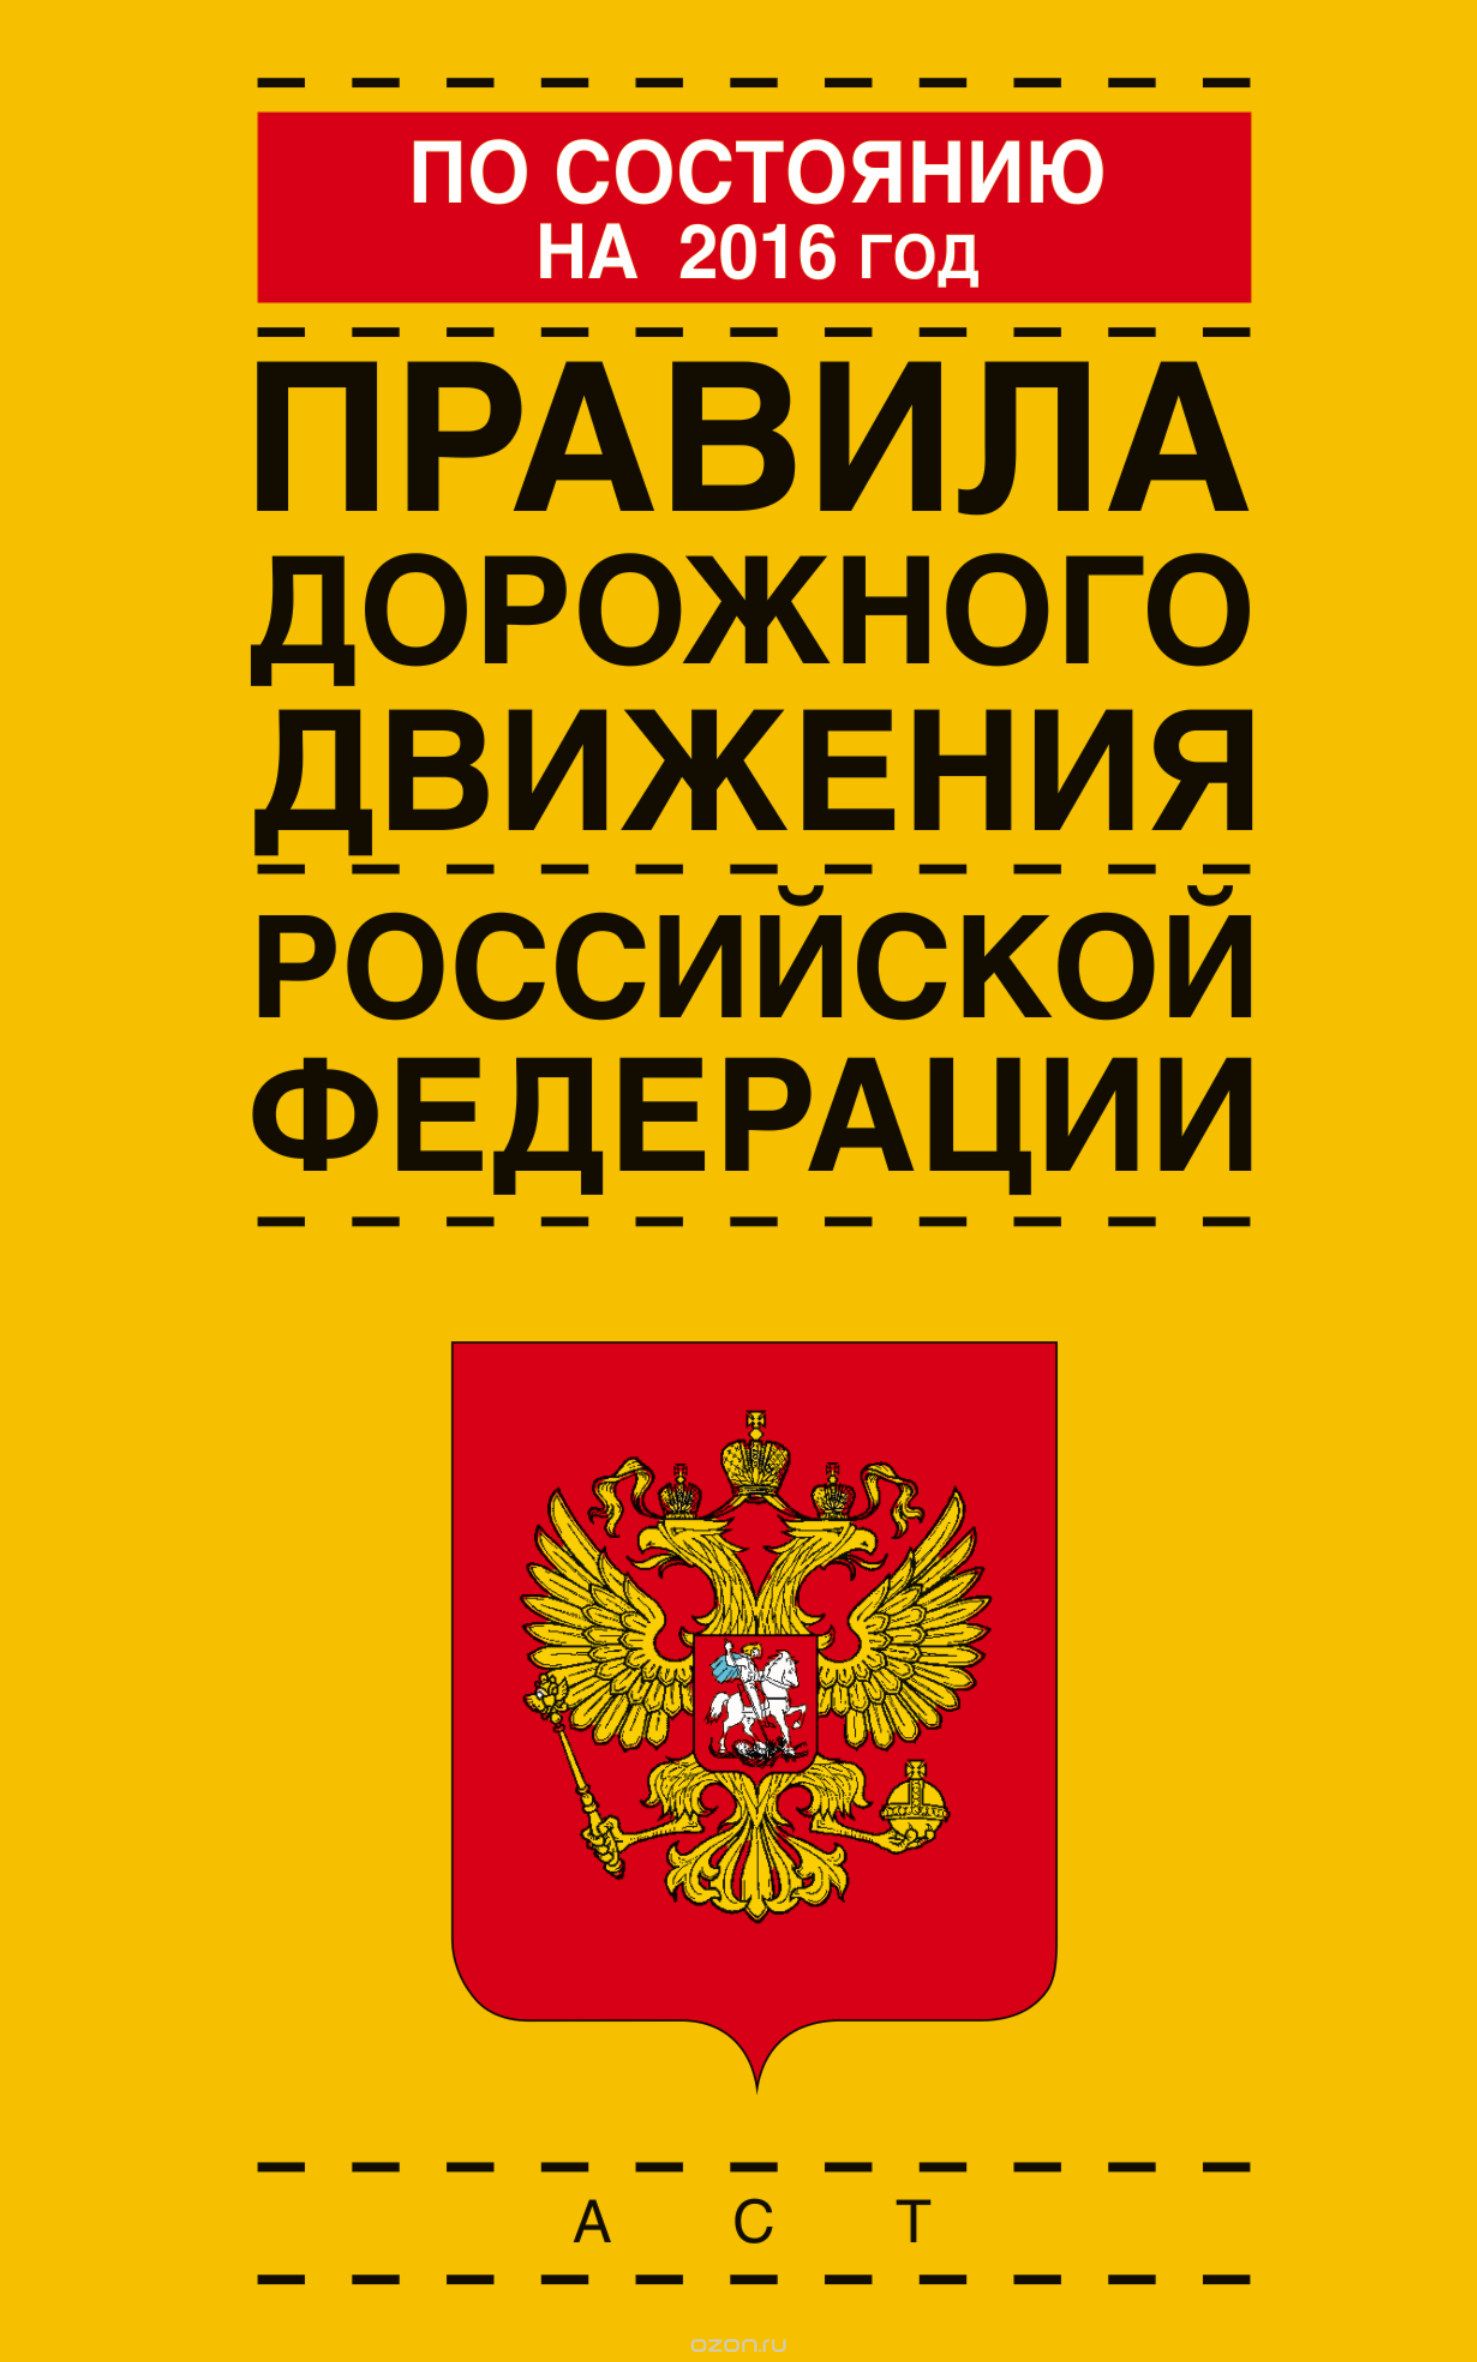 Скачать книгу "Правила дорожного движения Российской Федерации по состоянию на 2016 год"